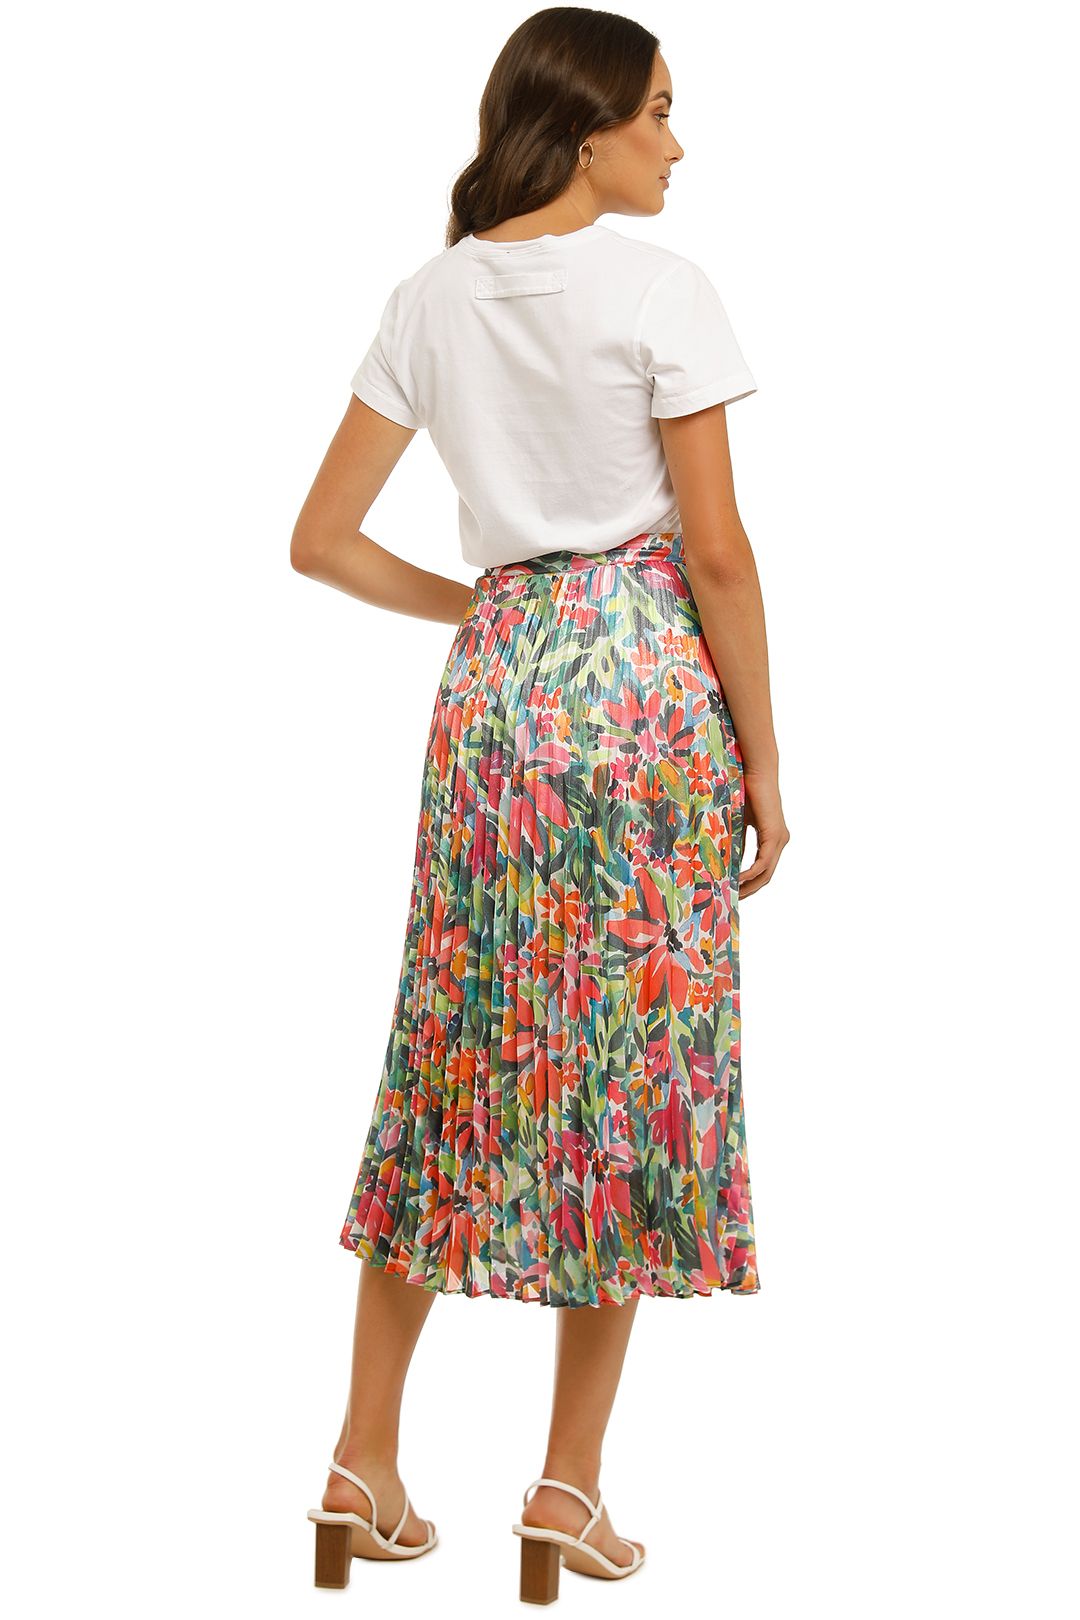 Cooper-St-Spirited-Pleated-Skirt-Print-Light-Back